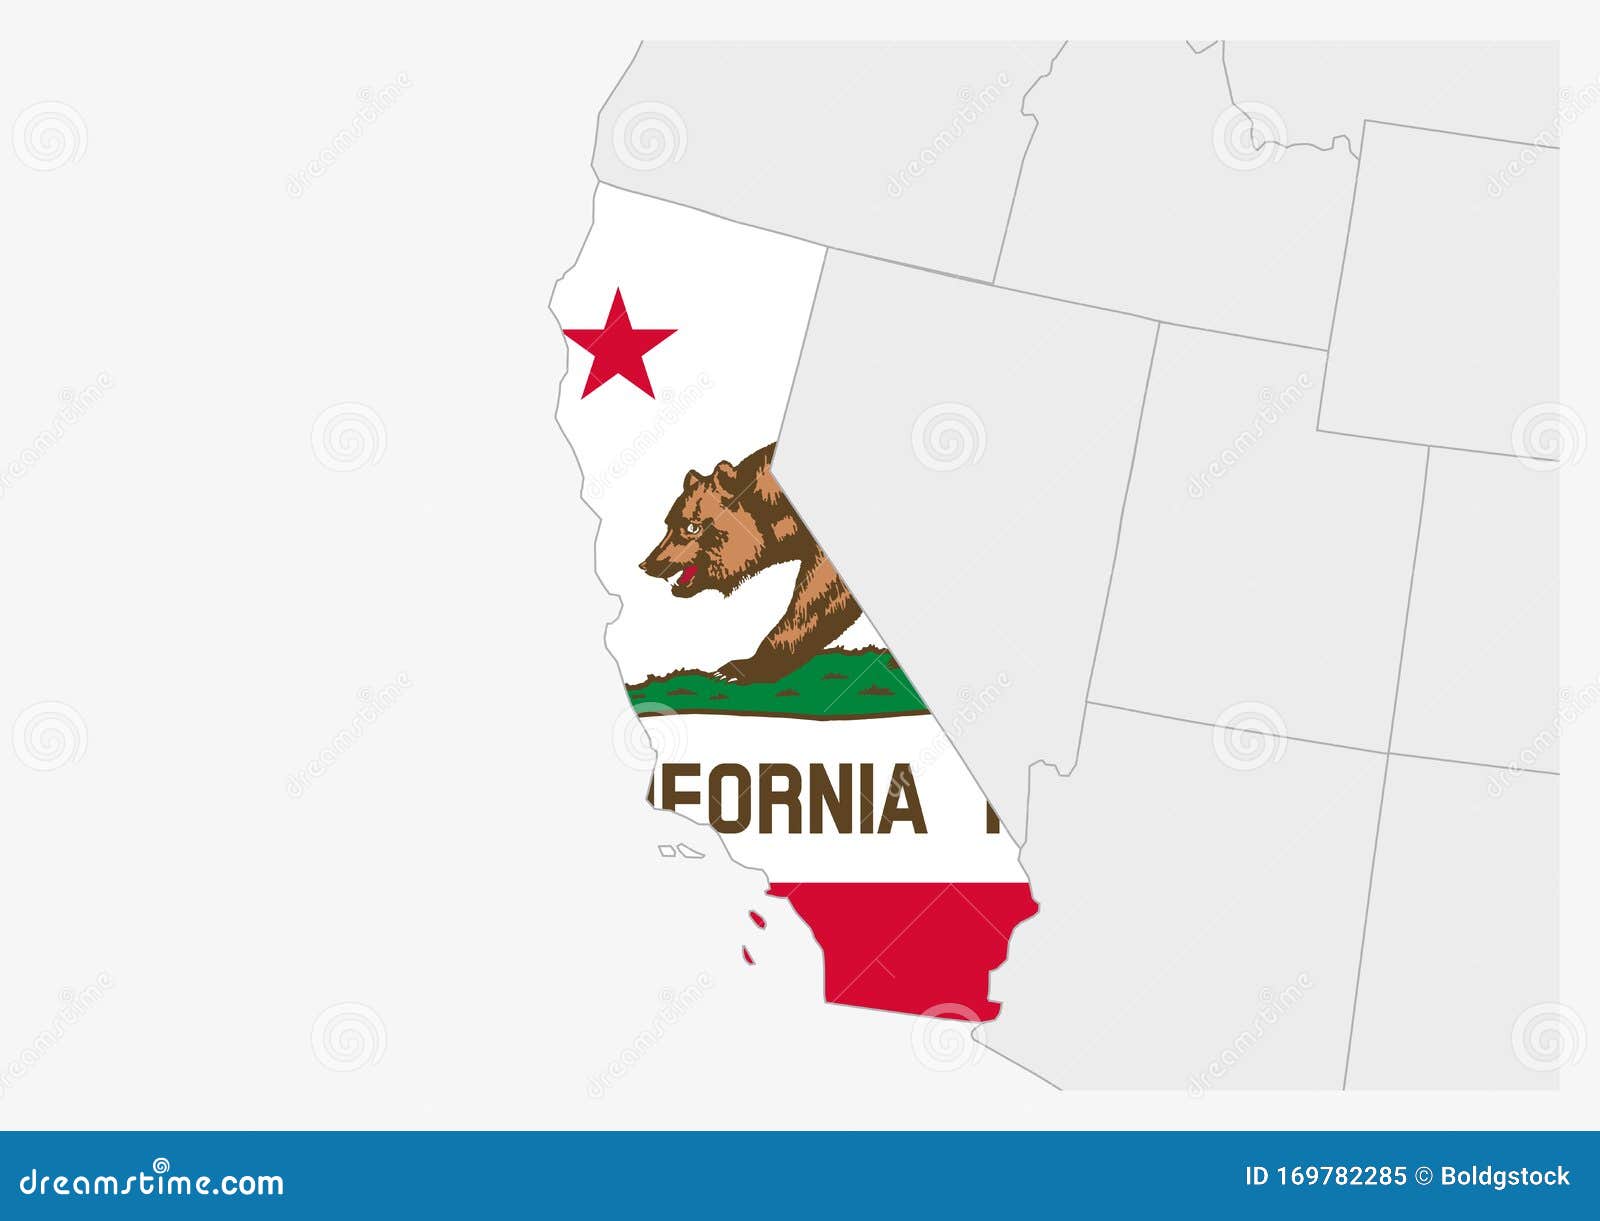 Mapa Del Estado De California En Estados Unidos Resaltado En Los Colores De La Bandera De